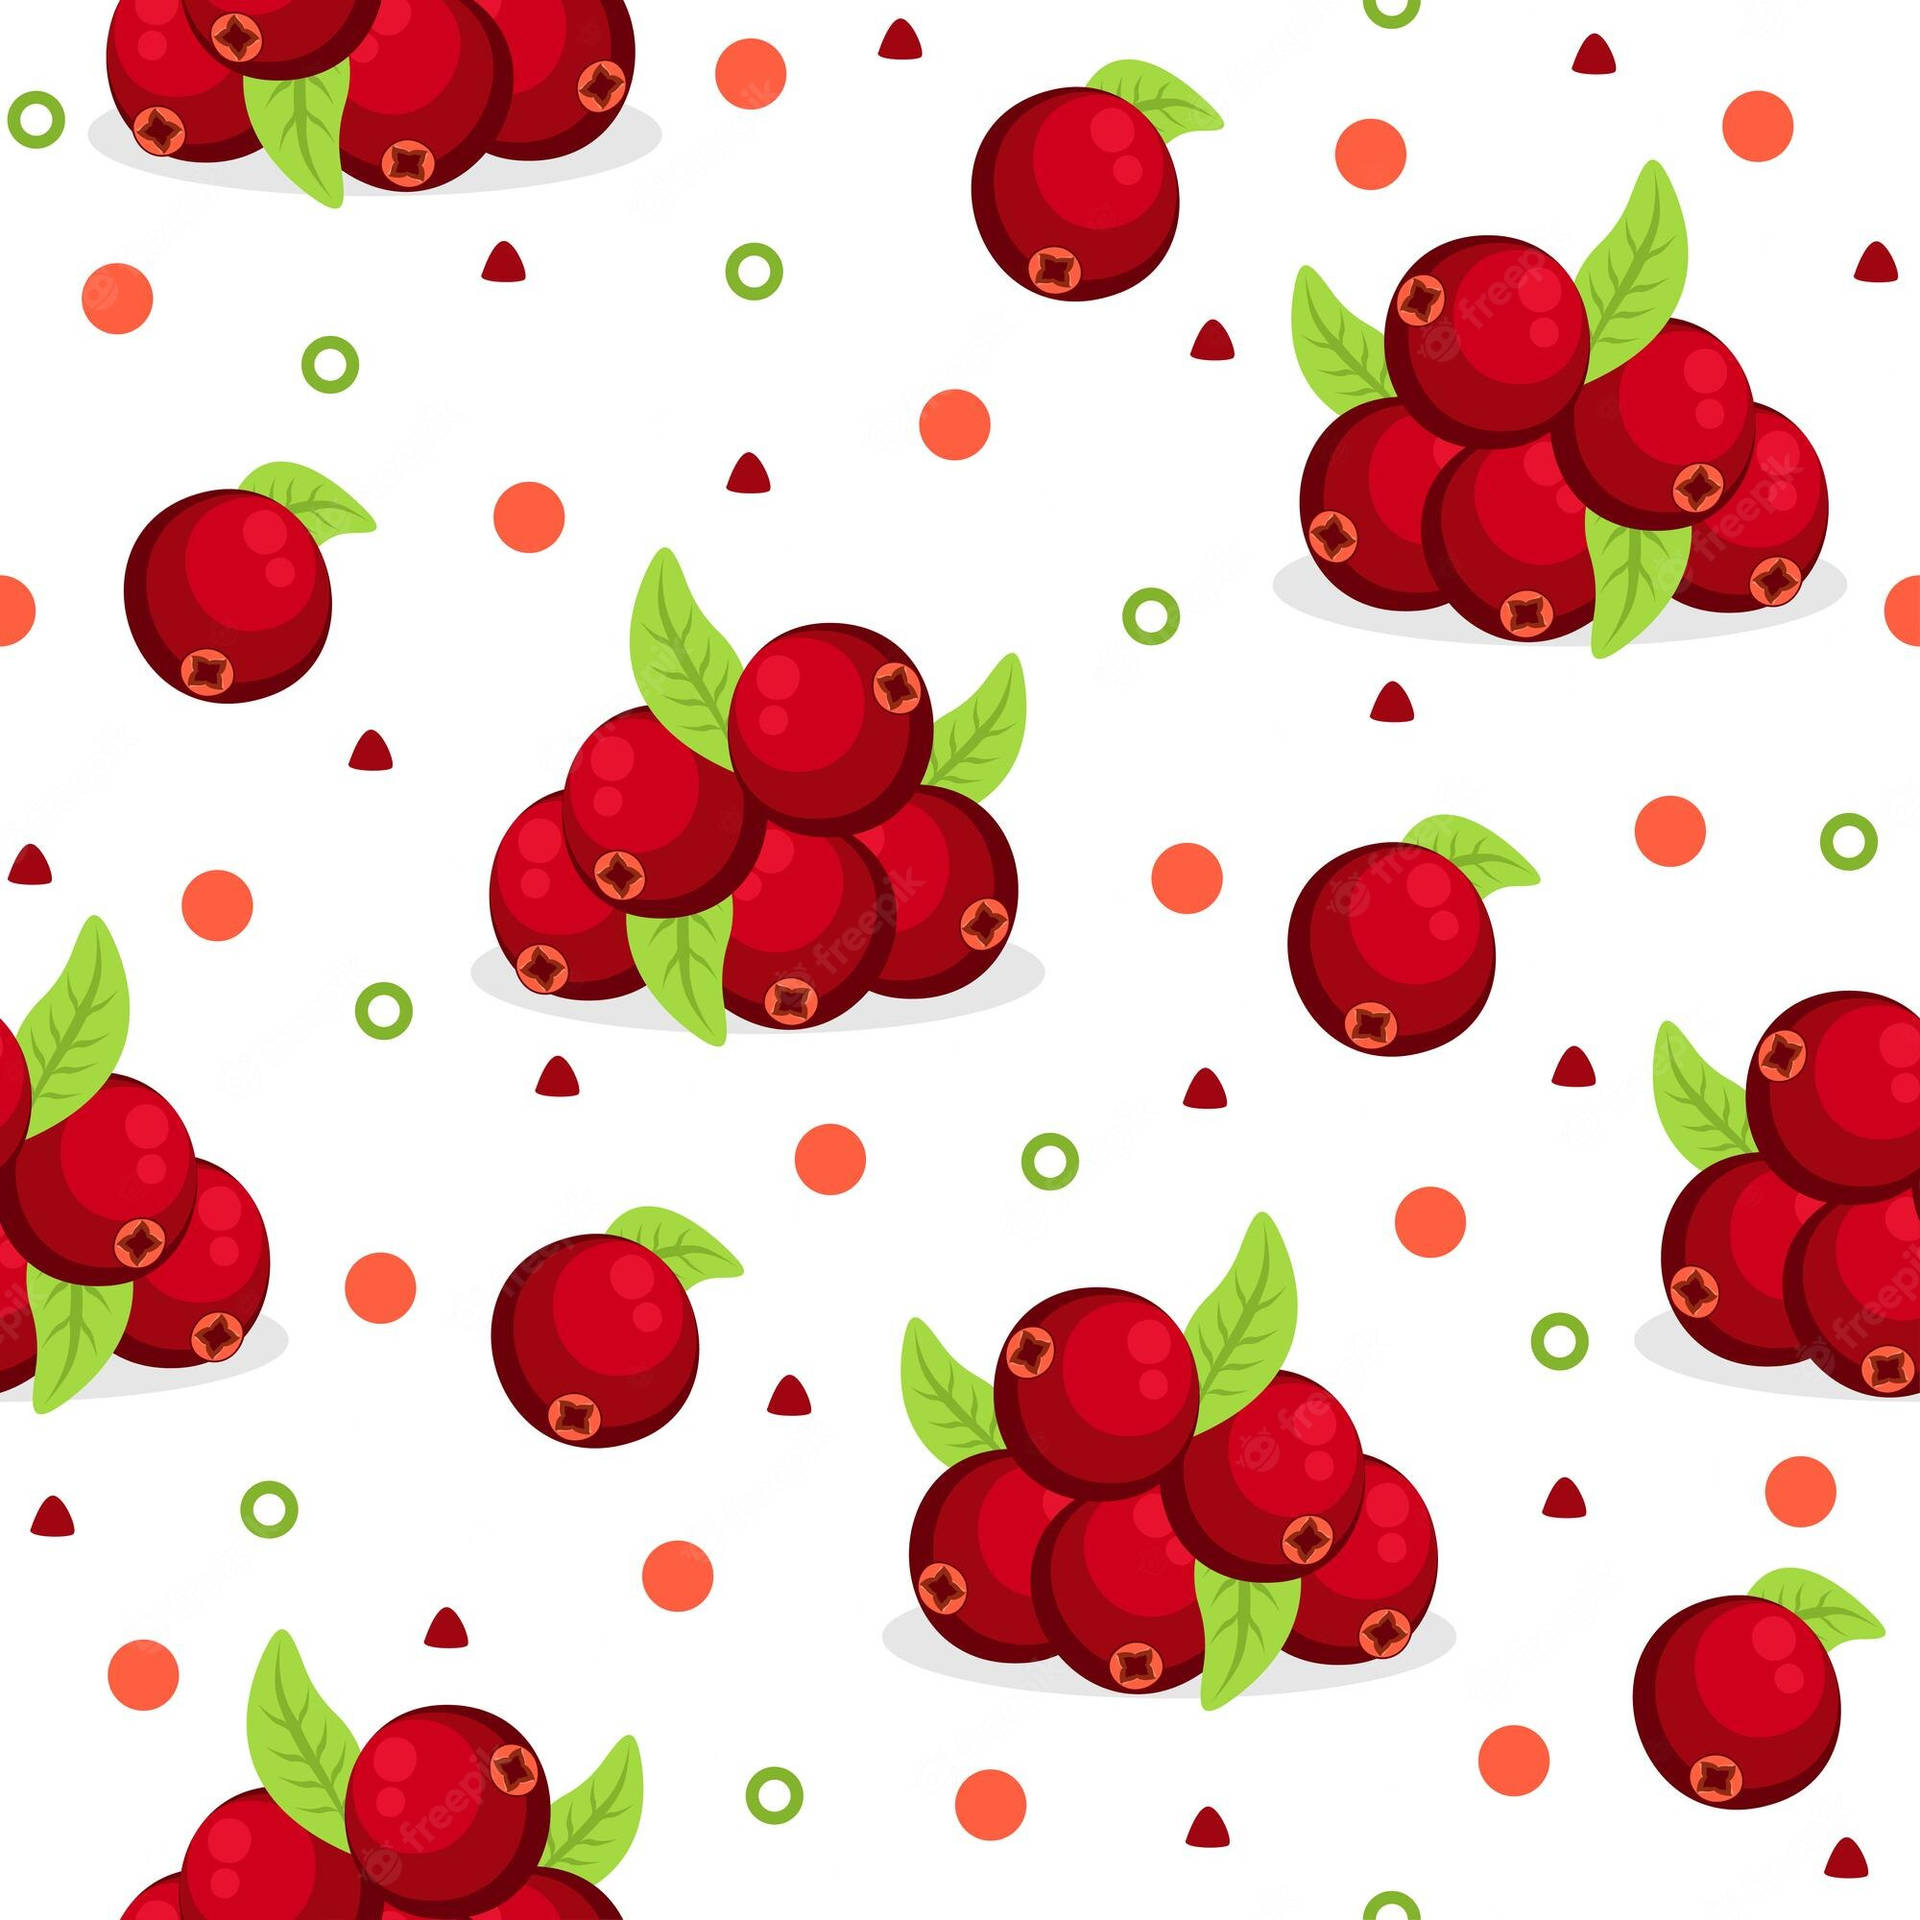 Cranberry Digital Artwork Wallpaper